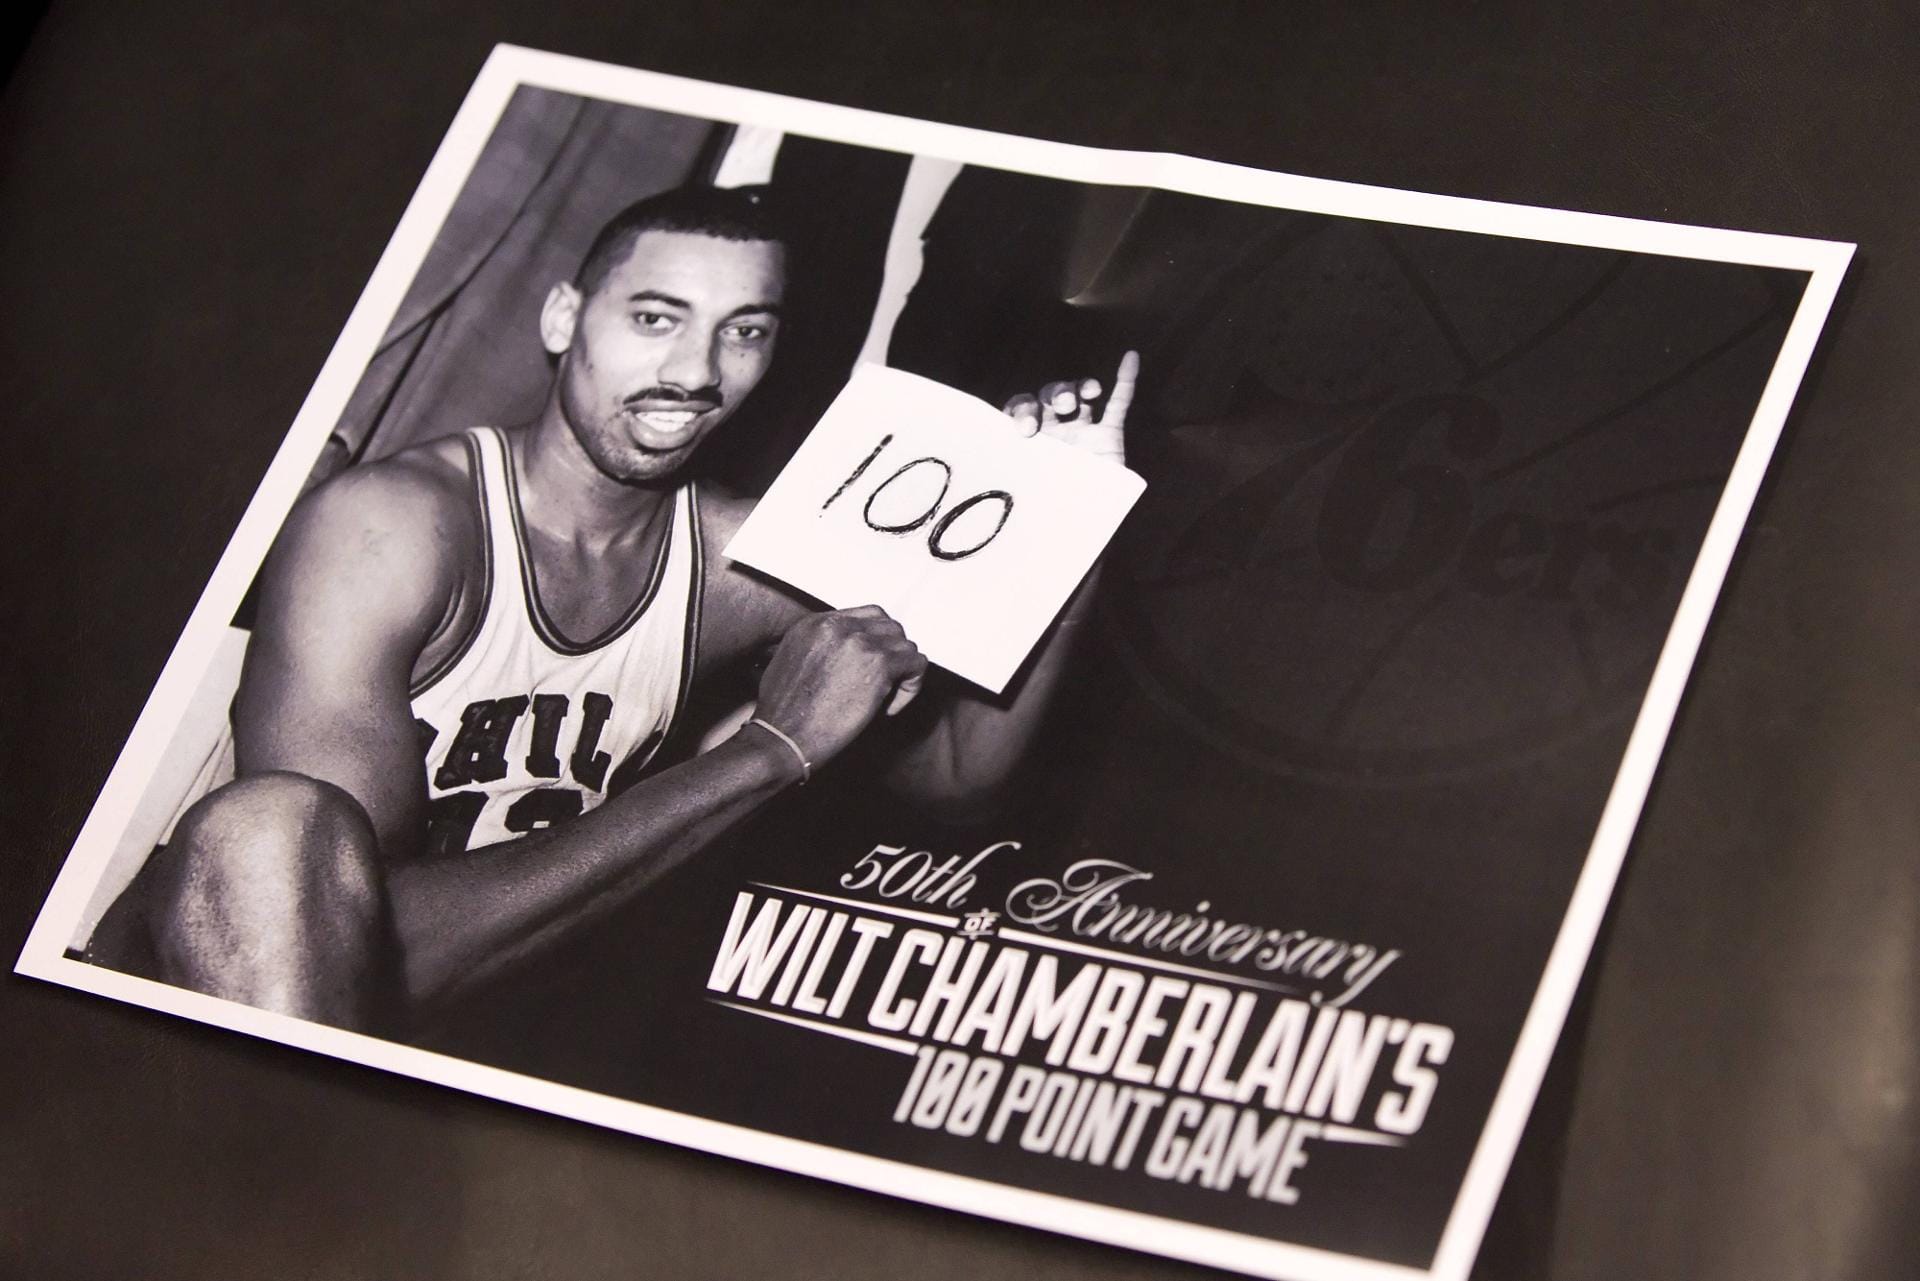 Wilt "the Stilt" Chamberlain ist der Shaquille O'Neal der Vergangenheit. Von 1959 bis '73 trieb der Center sein Unwesen in der NBA. Zweimal errang Chamberlain den Titel, 1967 mit den Philadelphia 76ers und 1972 mit den L.A. Lakers. Er ist ein Mann der Rekorde. Legendär ist sein 100-Punkte-Spiel 1962 gegen die New York Knicks. Aber auch 55 Rebounds in einer Partie sind einzigartig. Sein Punkteschnitt in der Saison 61/62 betrug stattliche 51,2. Chamberlain verstarb 1999 im Alter von 63 Jahren.